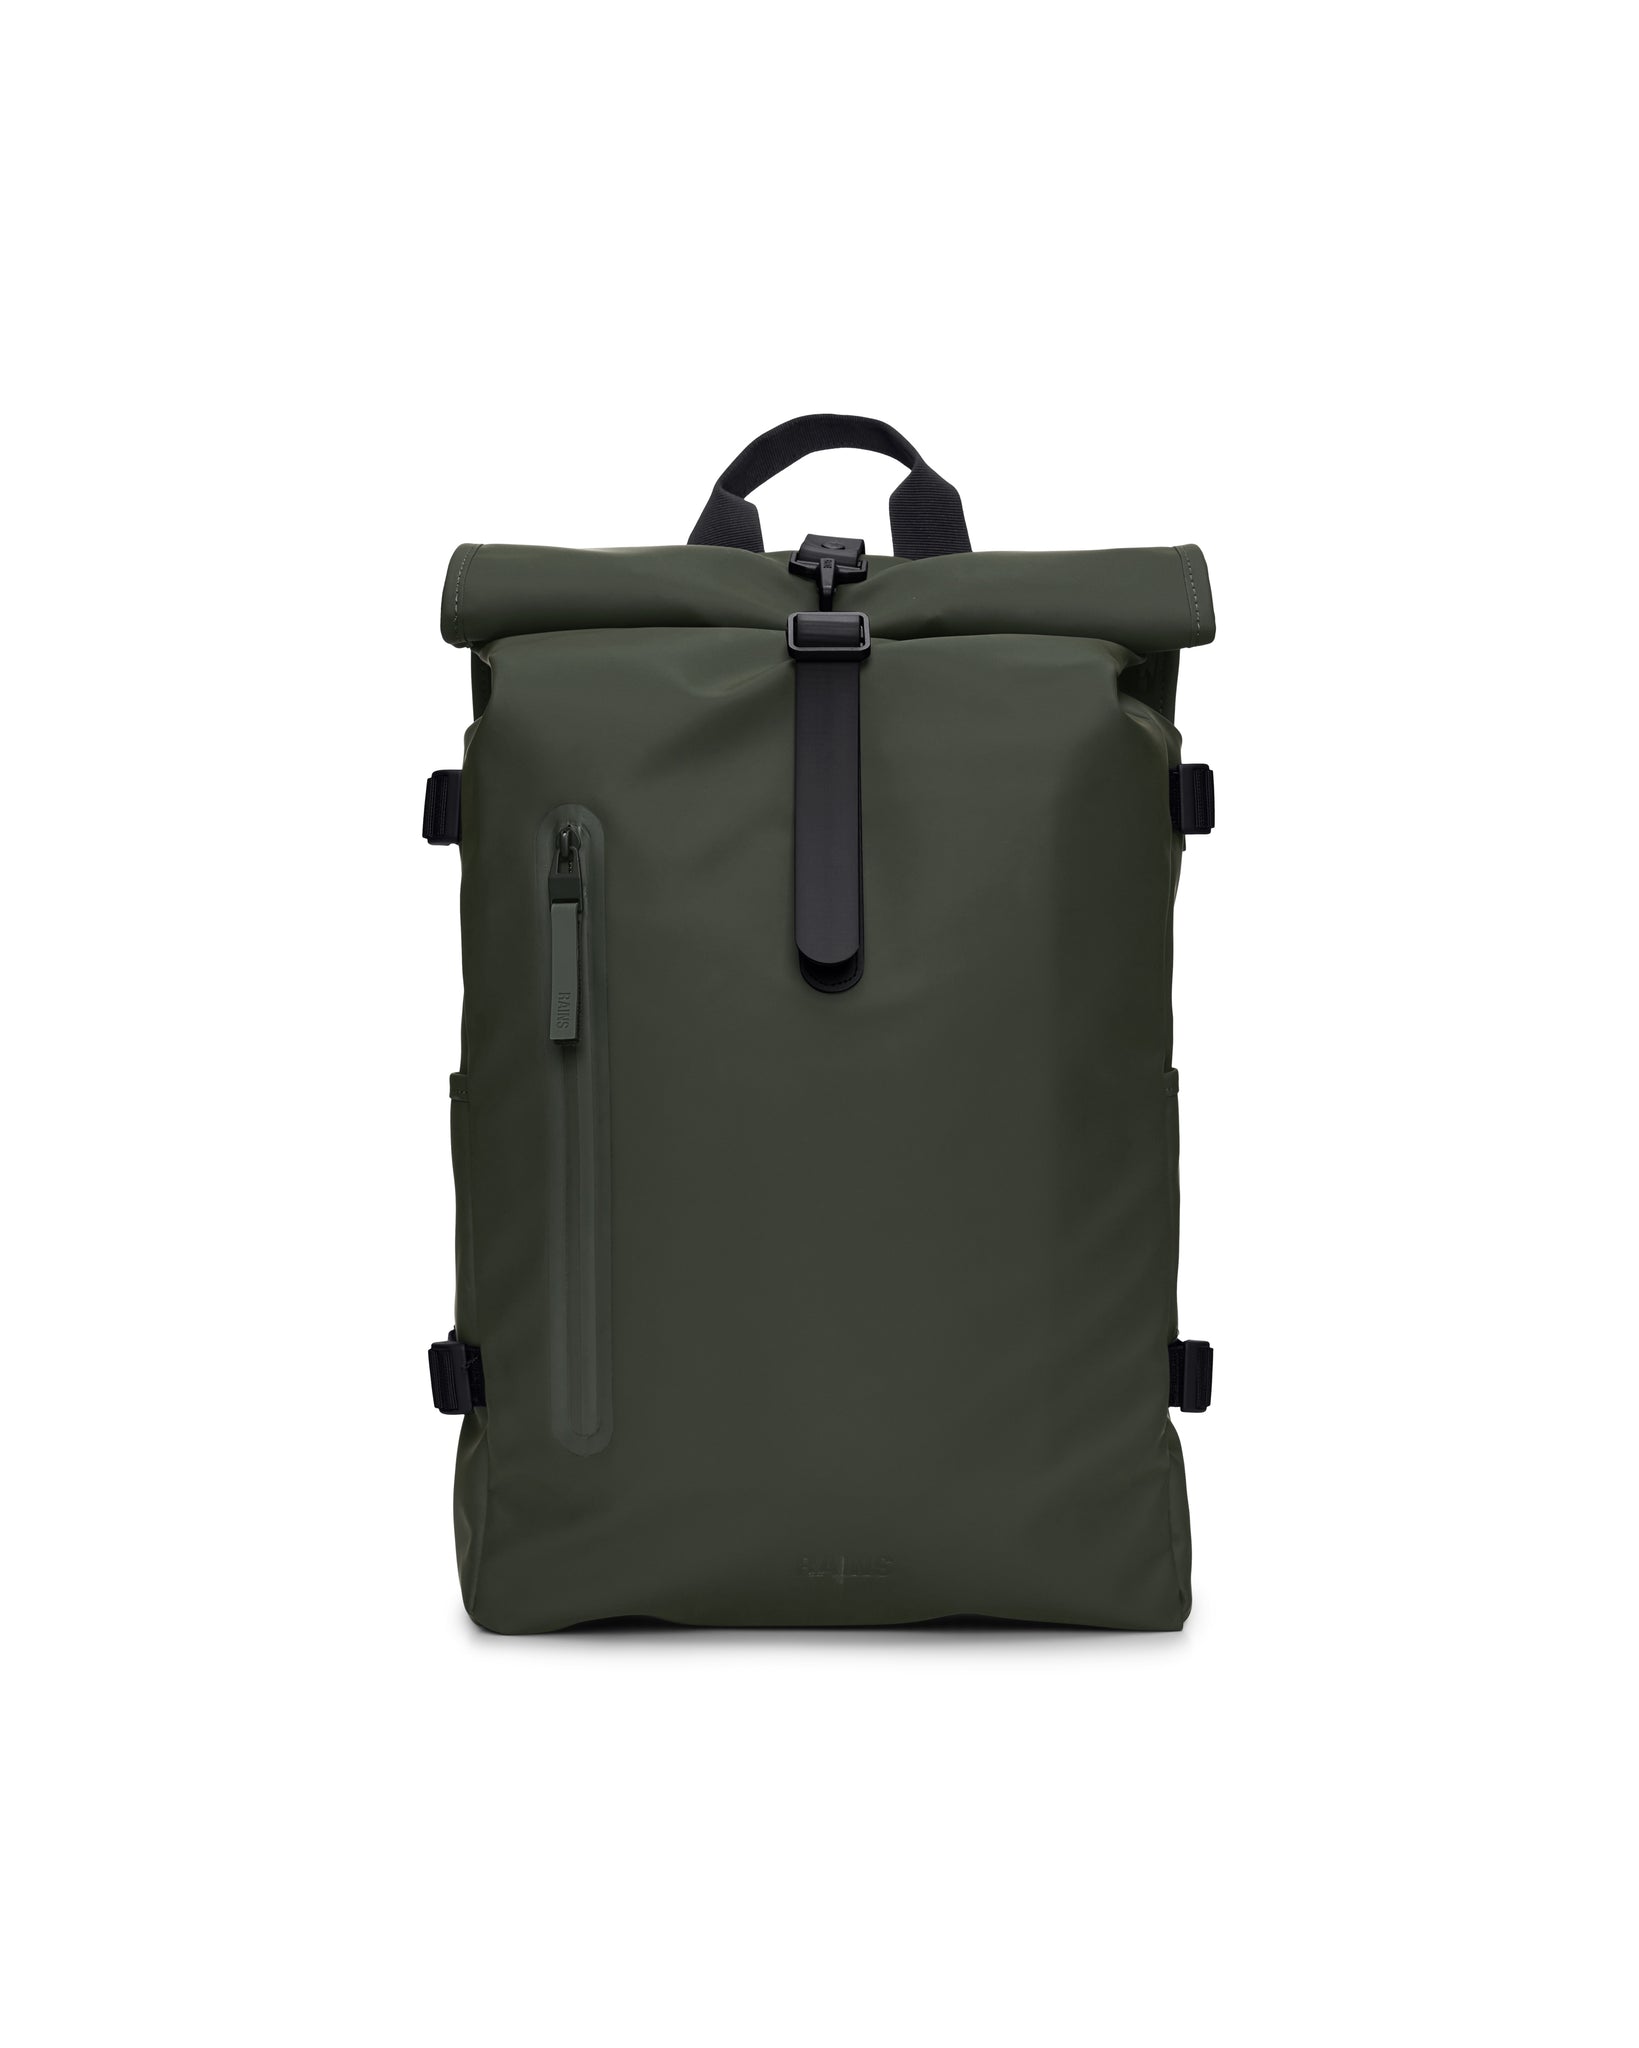 Rolltop Rucksack Large Backpack - Green